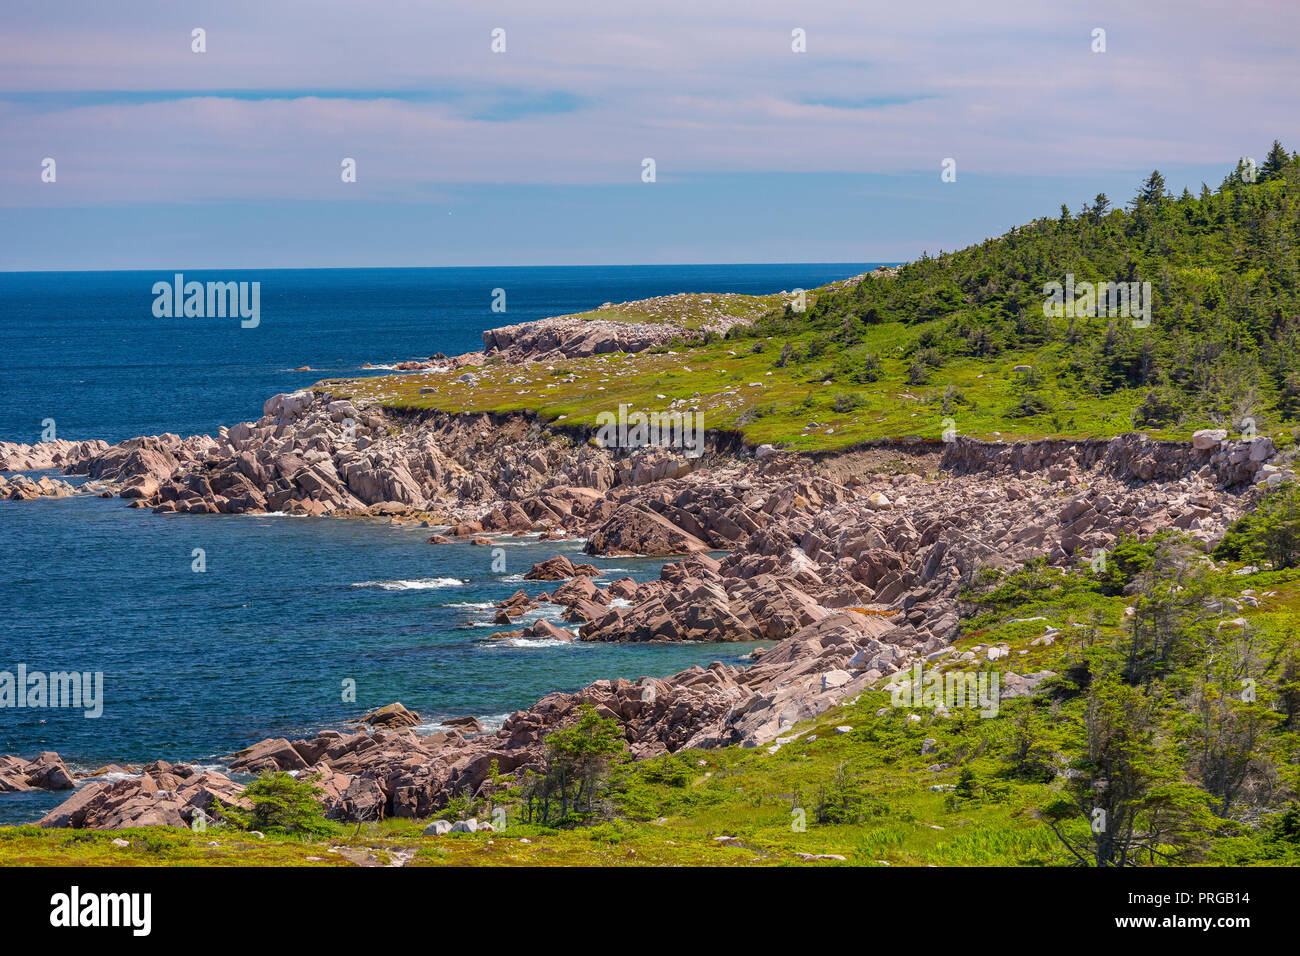 WHITE POINT, île du Cap-Breton, Nouvelle-Écosse, Canada - Paysage de côte. et l'océan Atlantique. Banque D'Images